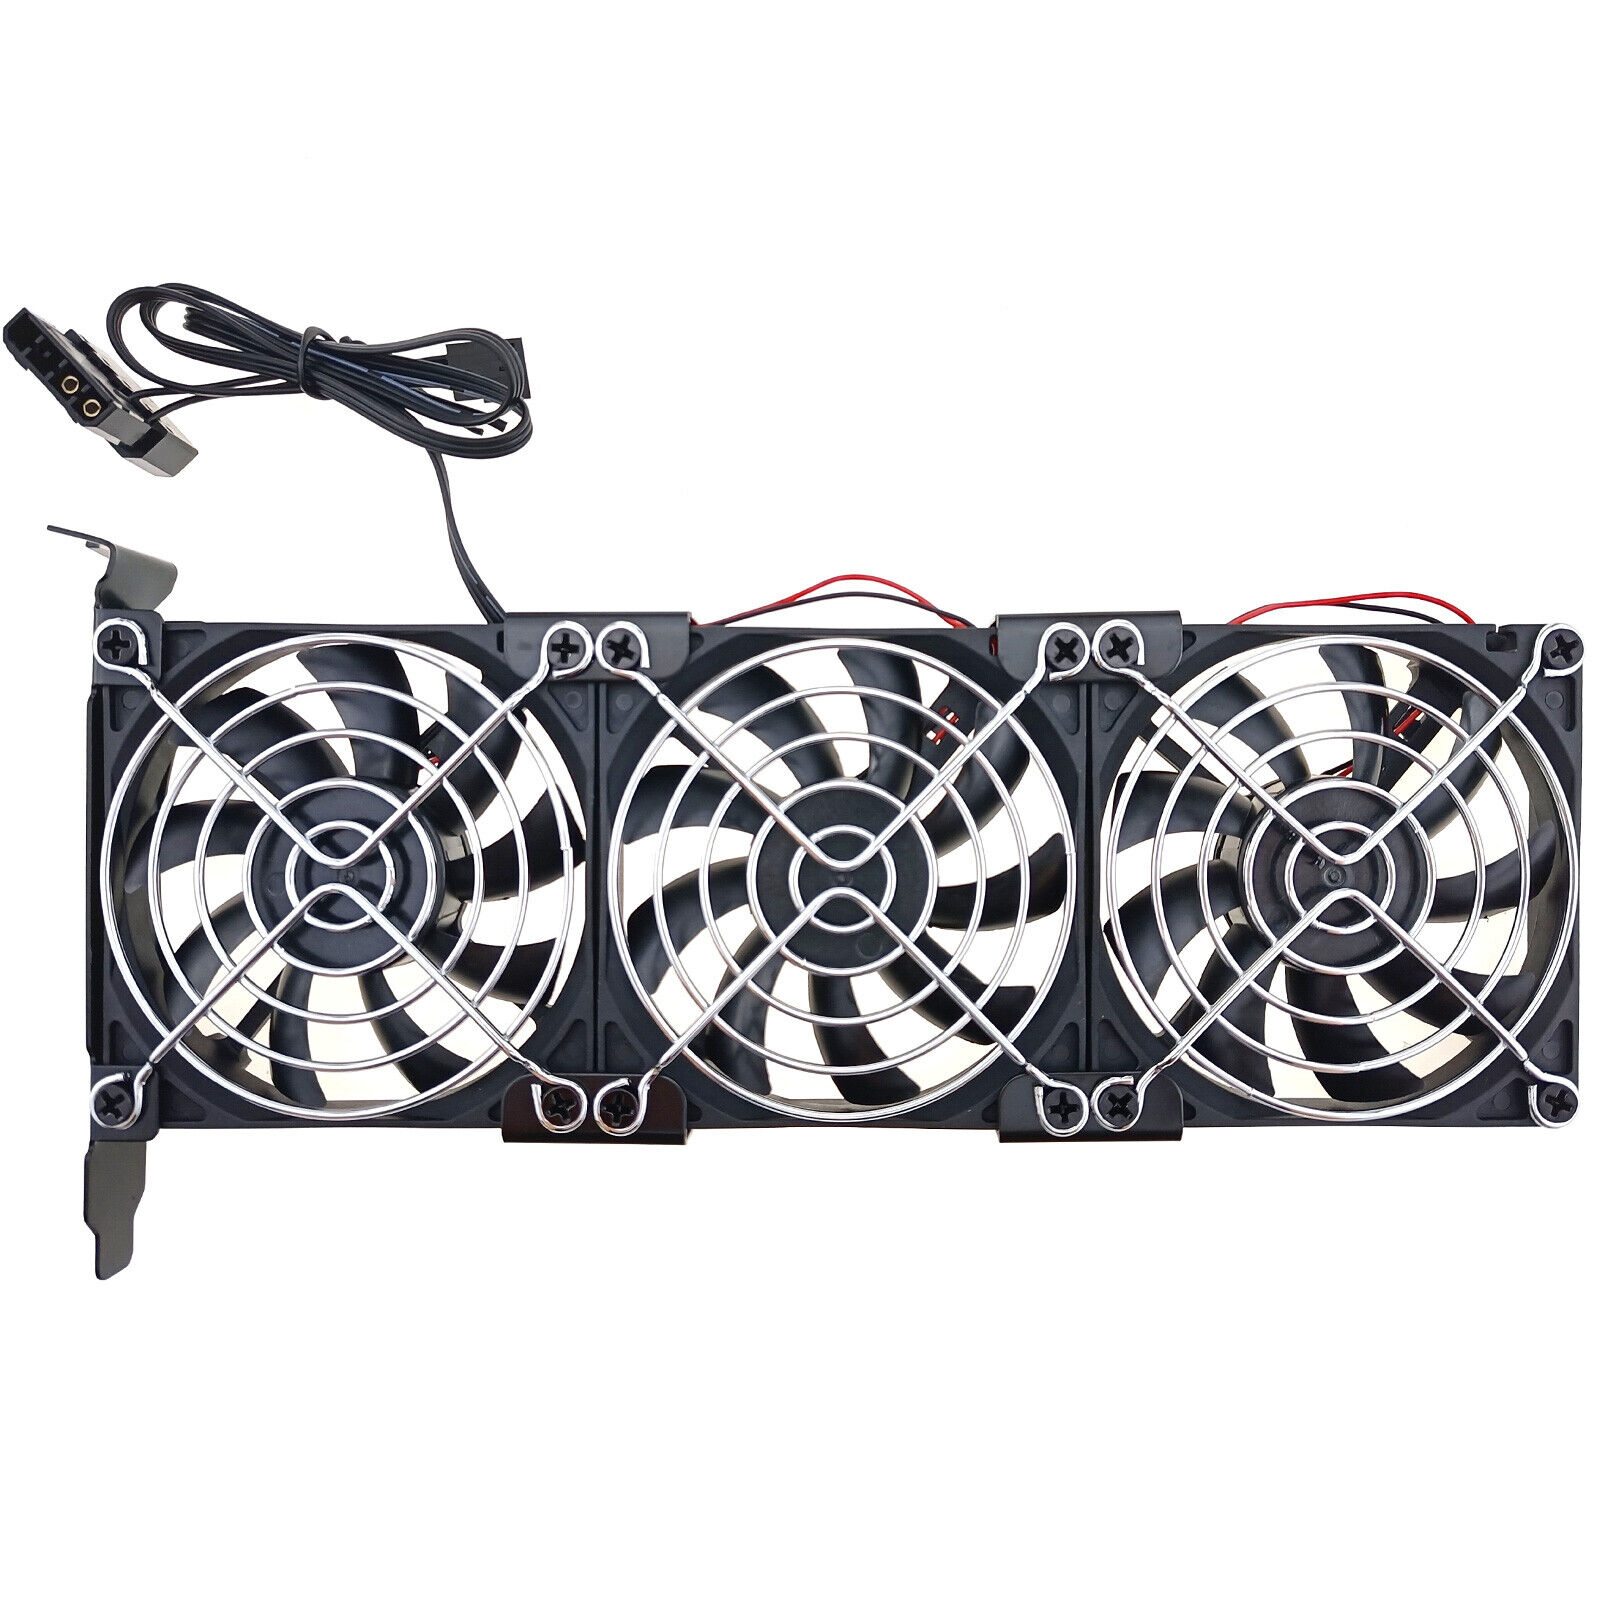 PCIe Video Card Cooler Triple Fan 3500rpm PC Case Slot Air Cooling Bracket Panel